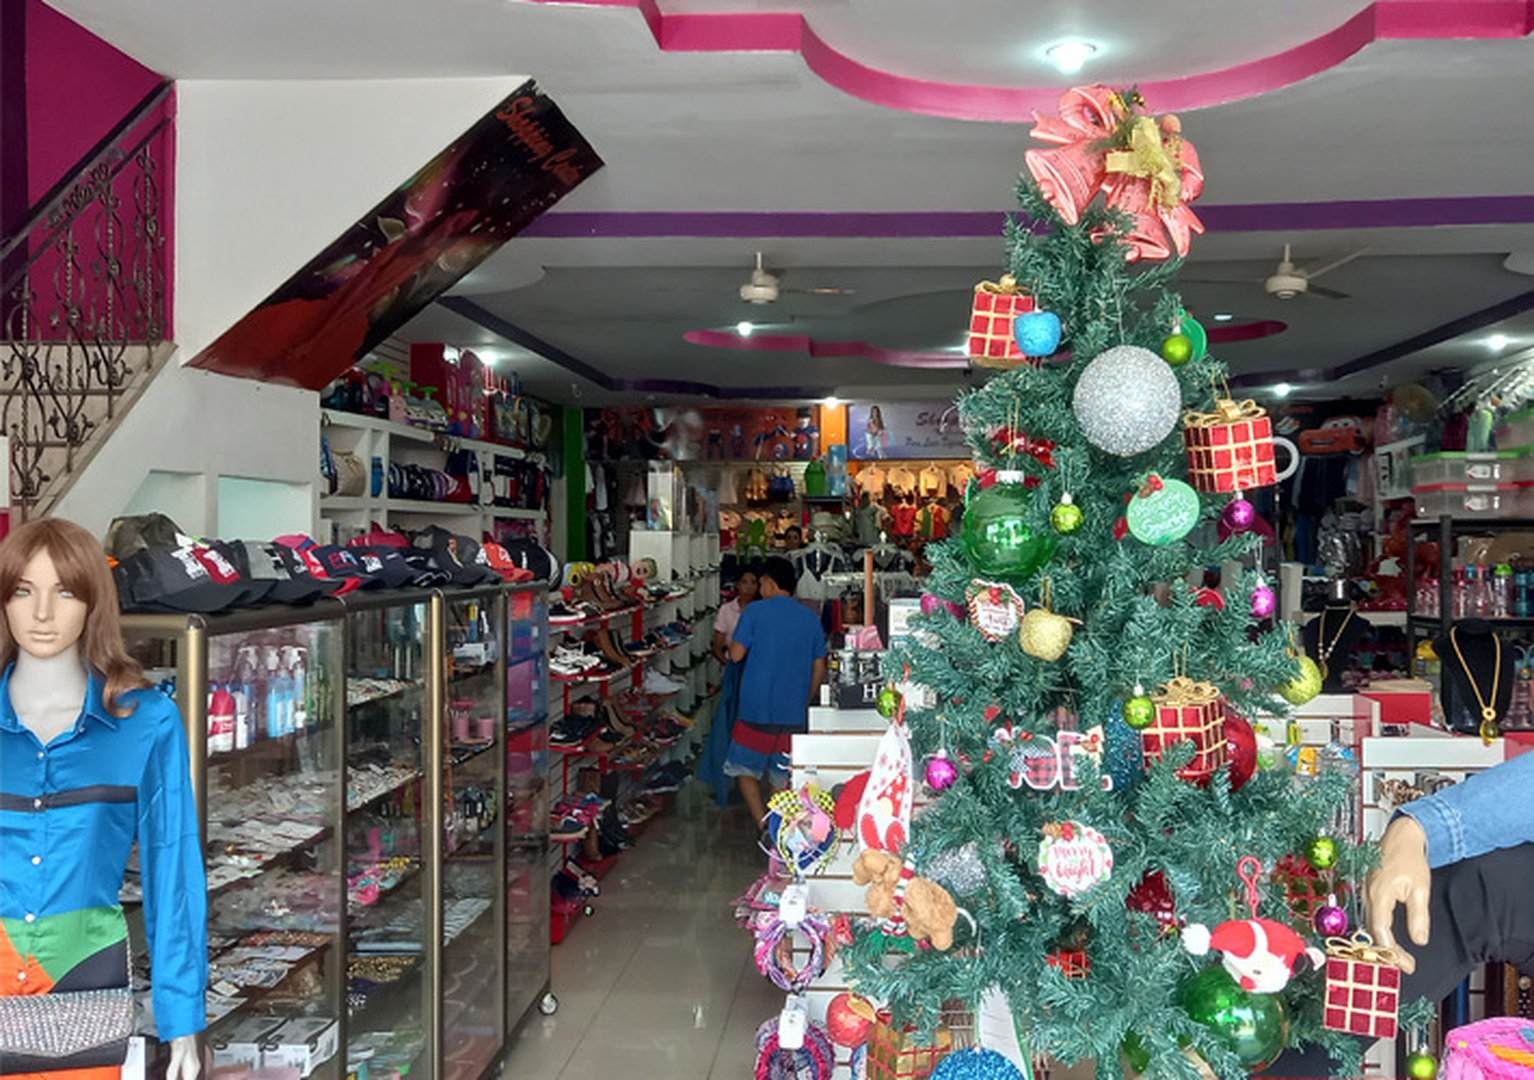 Ya el comercio de Juigalpa está surtido con mercadería alusiva a la temporada decembrina.